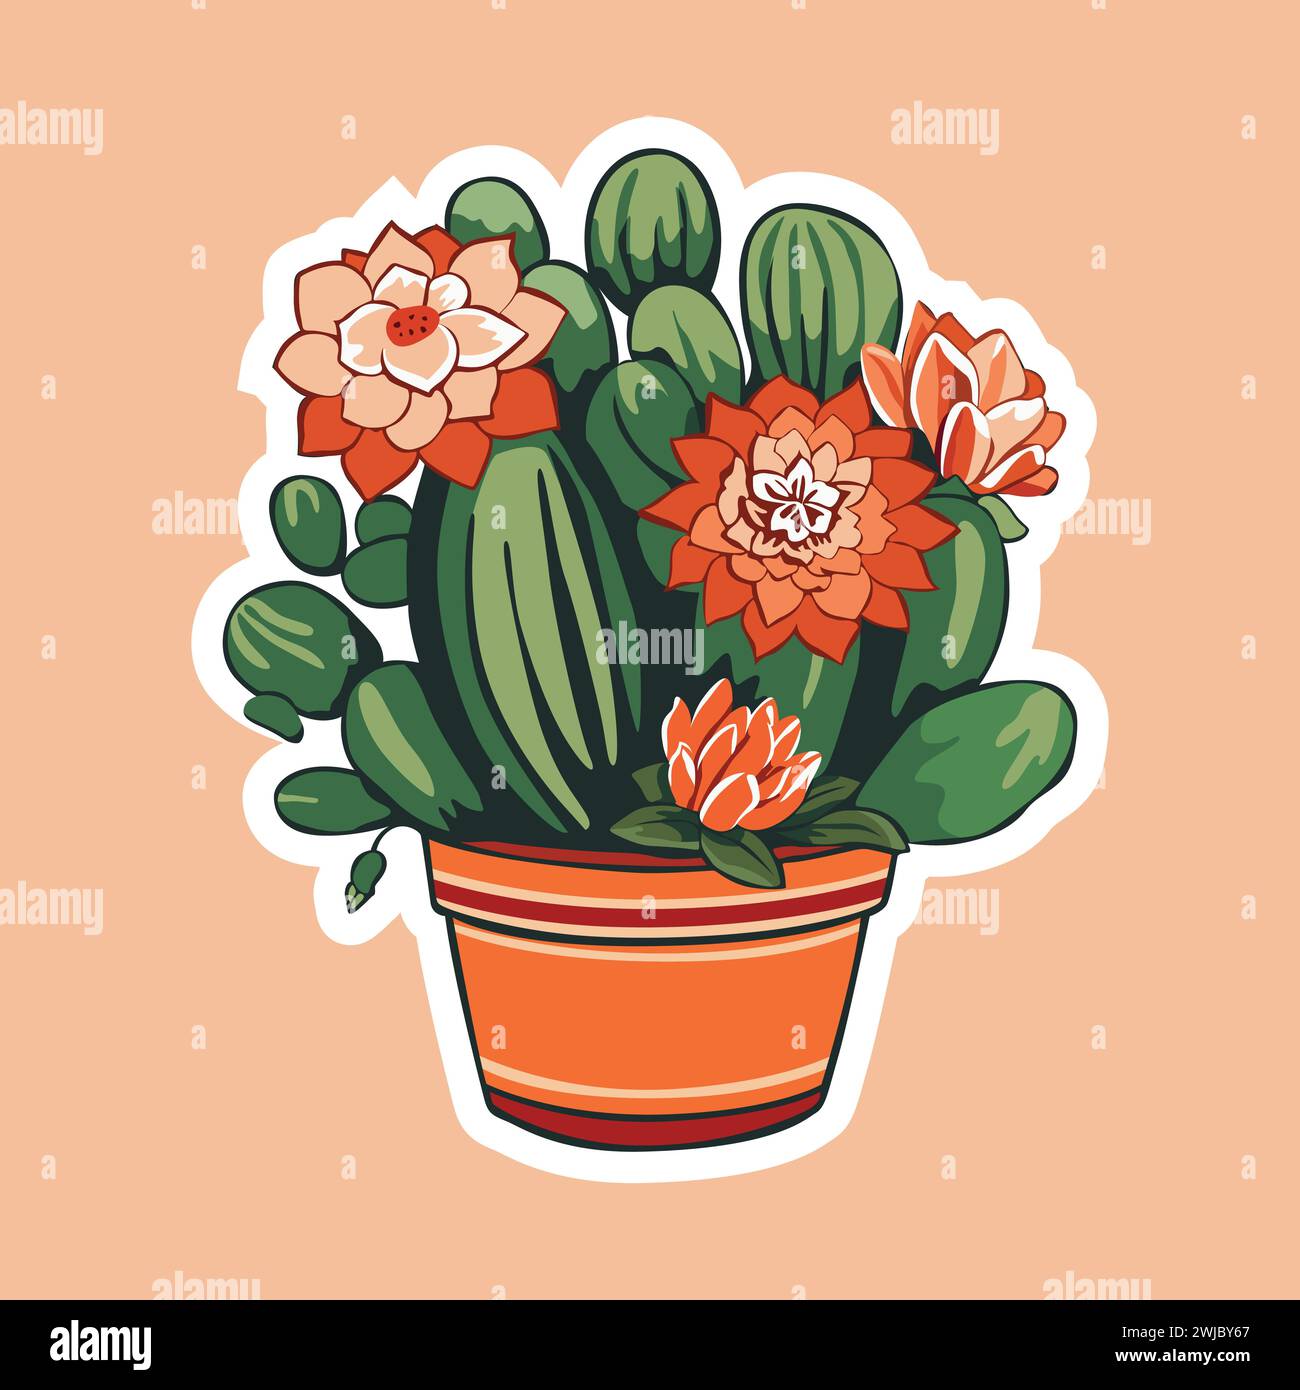 Cactus Bloom. Illustrazione grafica vettoriale di Cactus con fiori in vaso, che celebra la bellezza e la crescita del deserto. Illustrazione Vettoriale